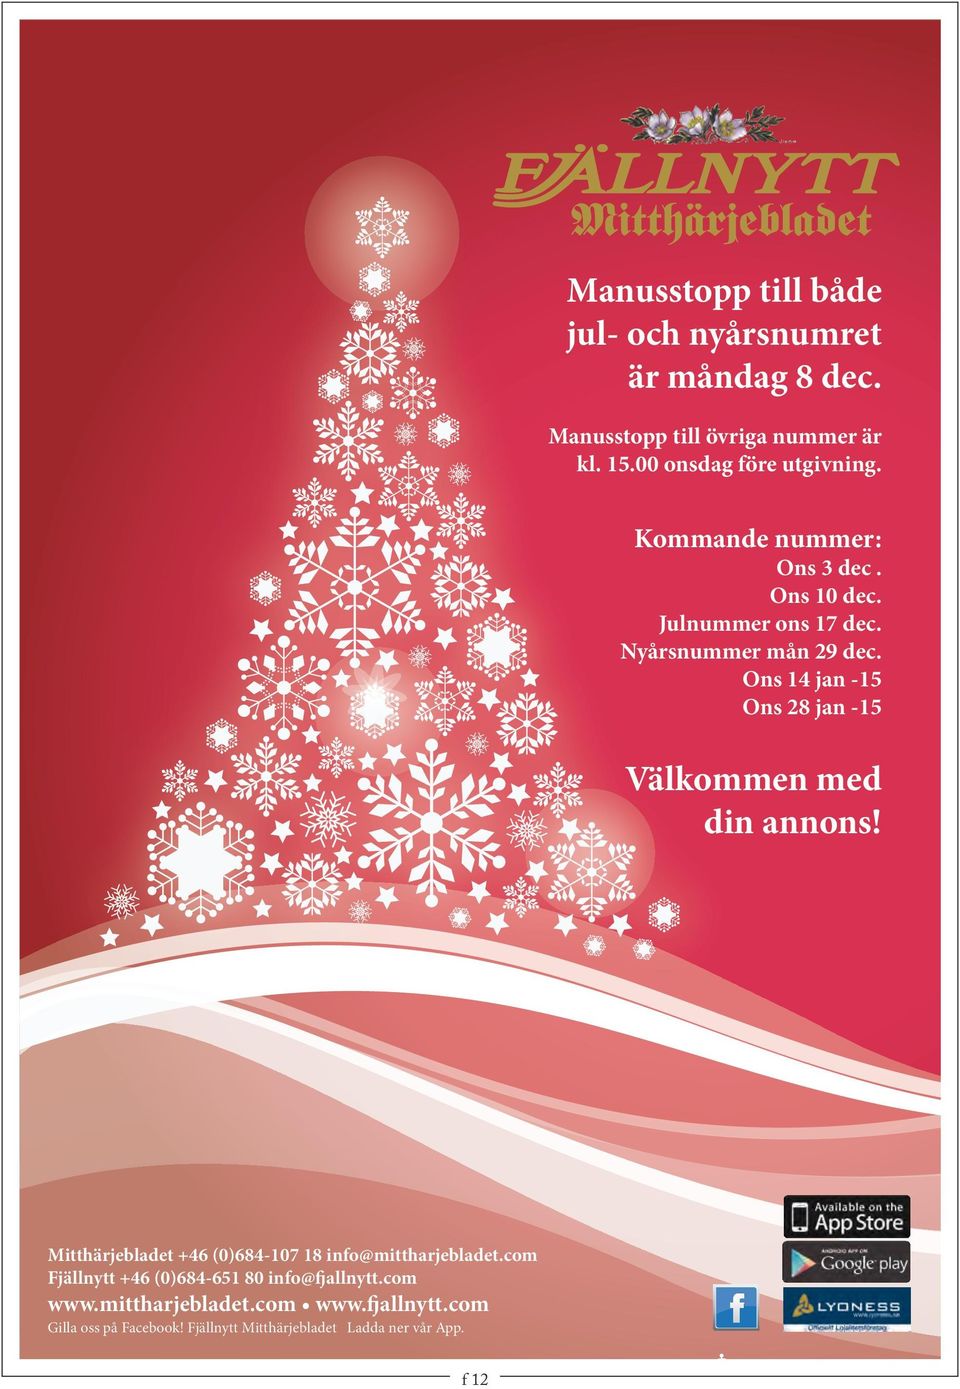 Ons 14 jan -15 Ons 28 jan -15 Välkommen med din annons! Mitthärjebladet +46 (0)684-107 18 info@mittharjebladet.